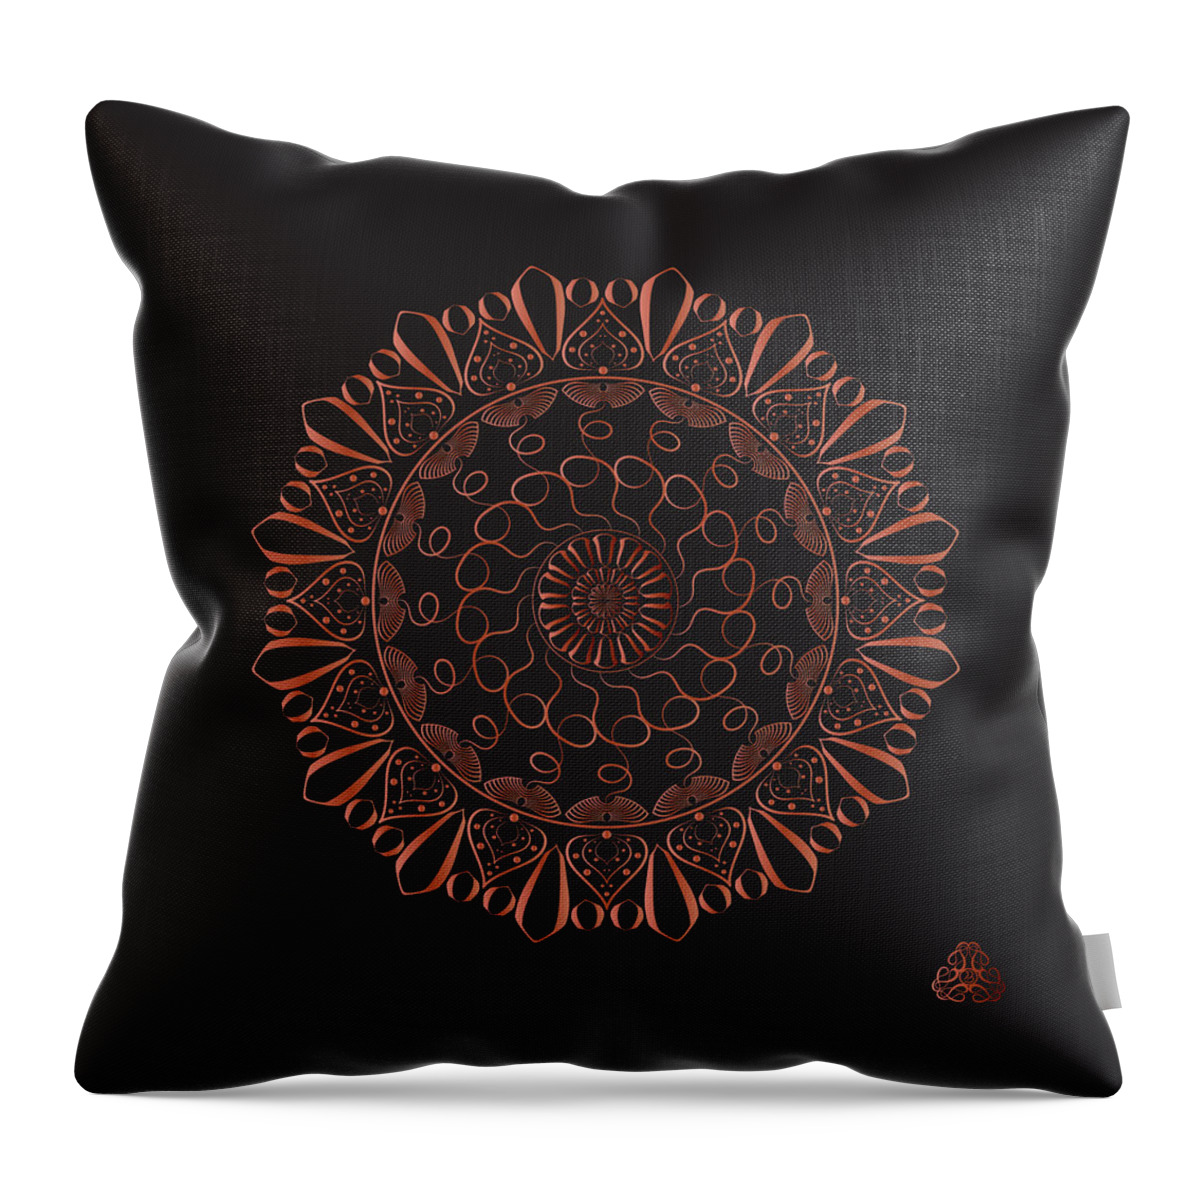 Mandala Throw Pillow featuring the digital art Kuklos No 4328 by Alan Bennington